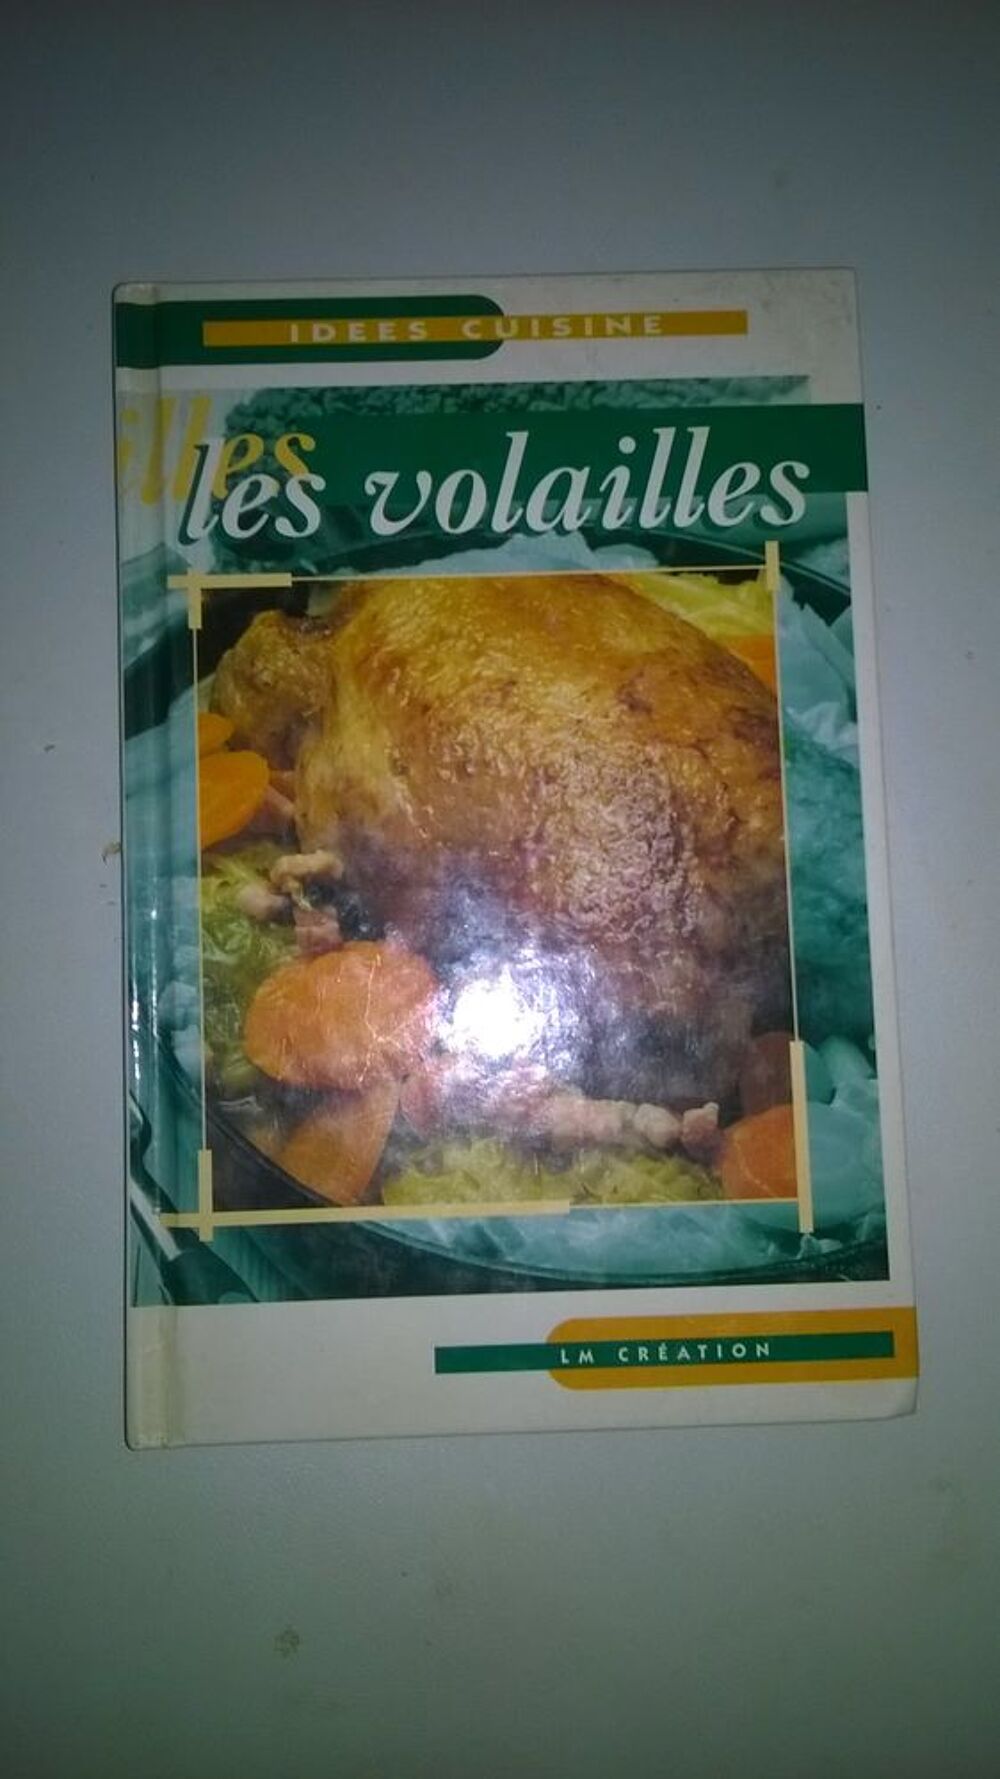 Livre Id&eacute;es cuisine 
Les volailles
NEUF
1998
LM cr&eacute;ation 
43 Cuisine